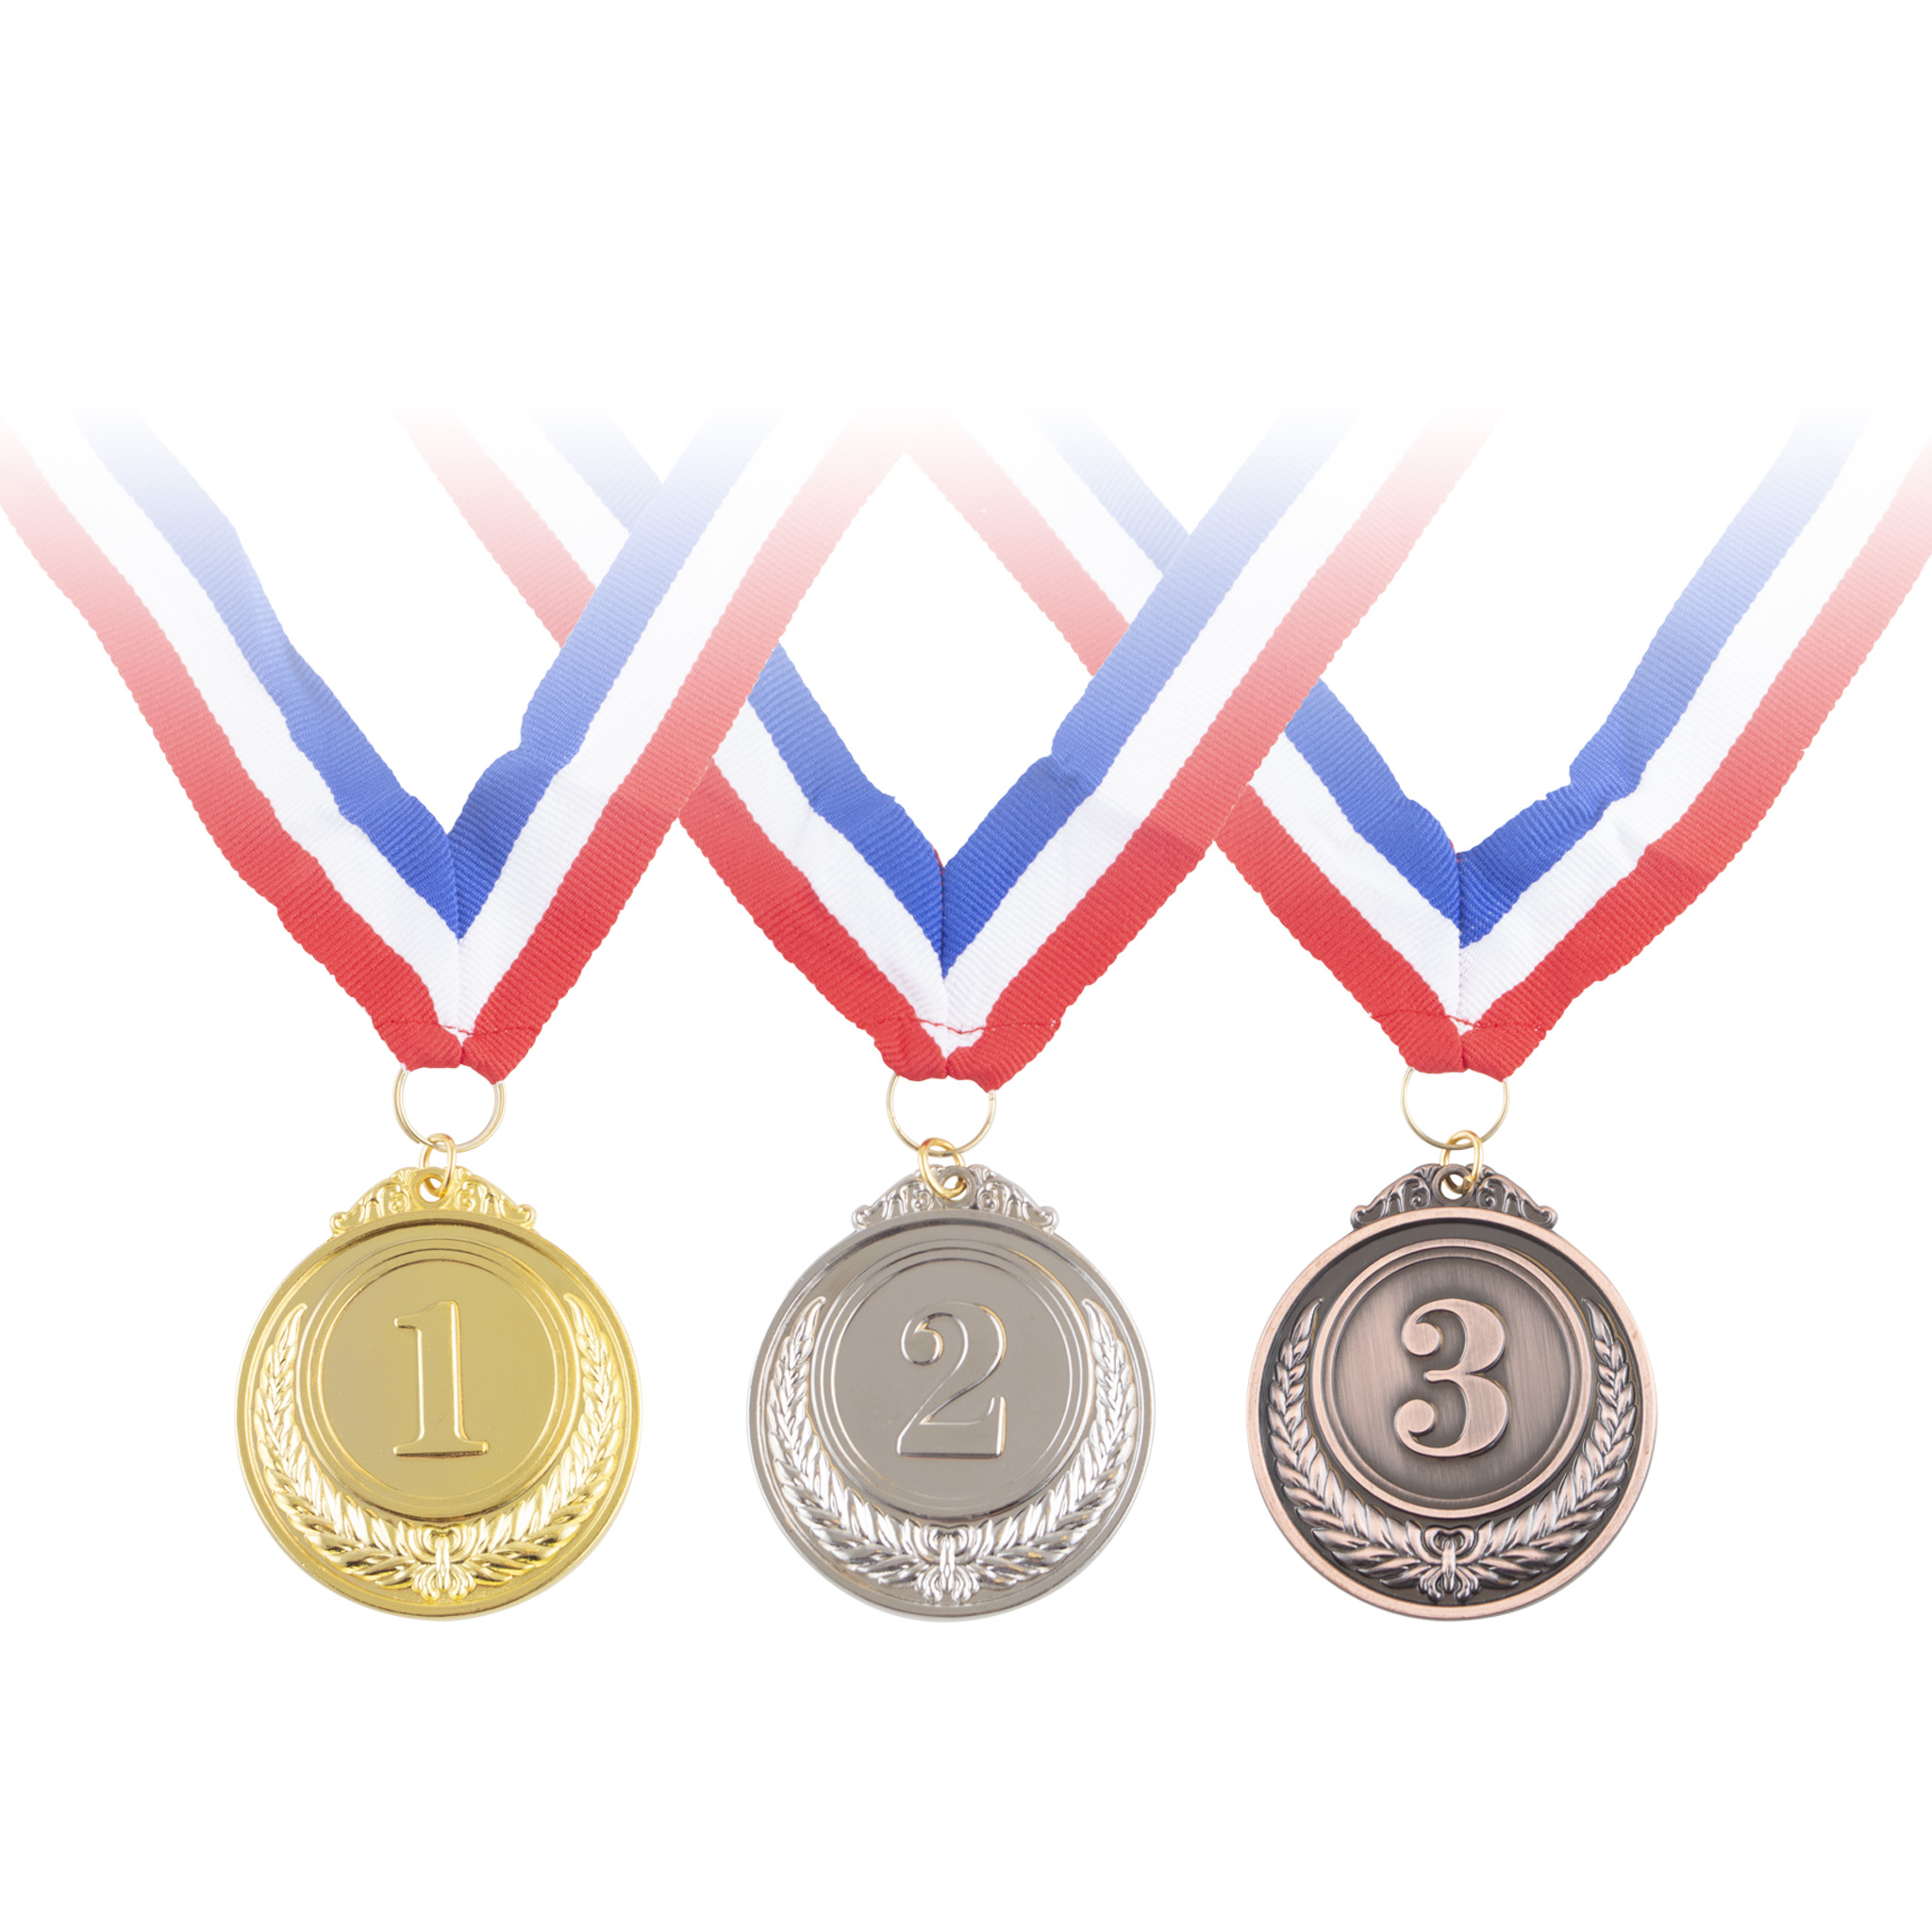 3st Medailles Goud/Zilver/Brons